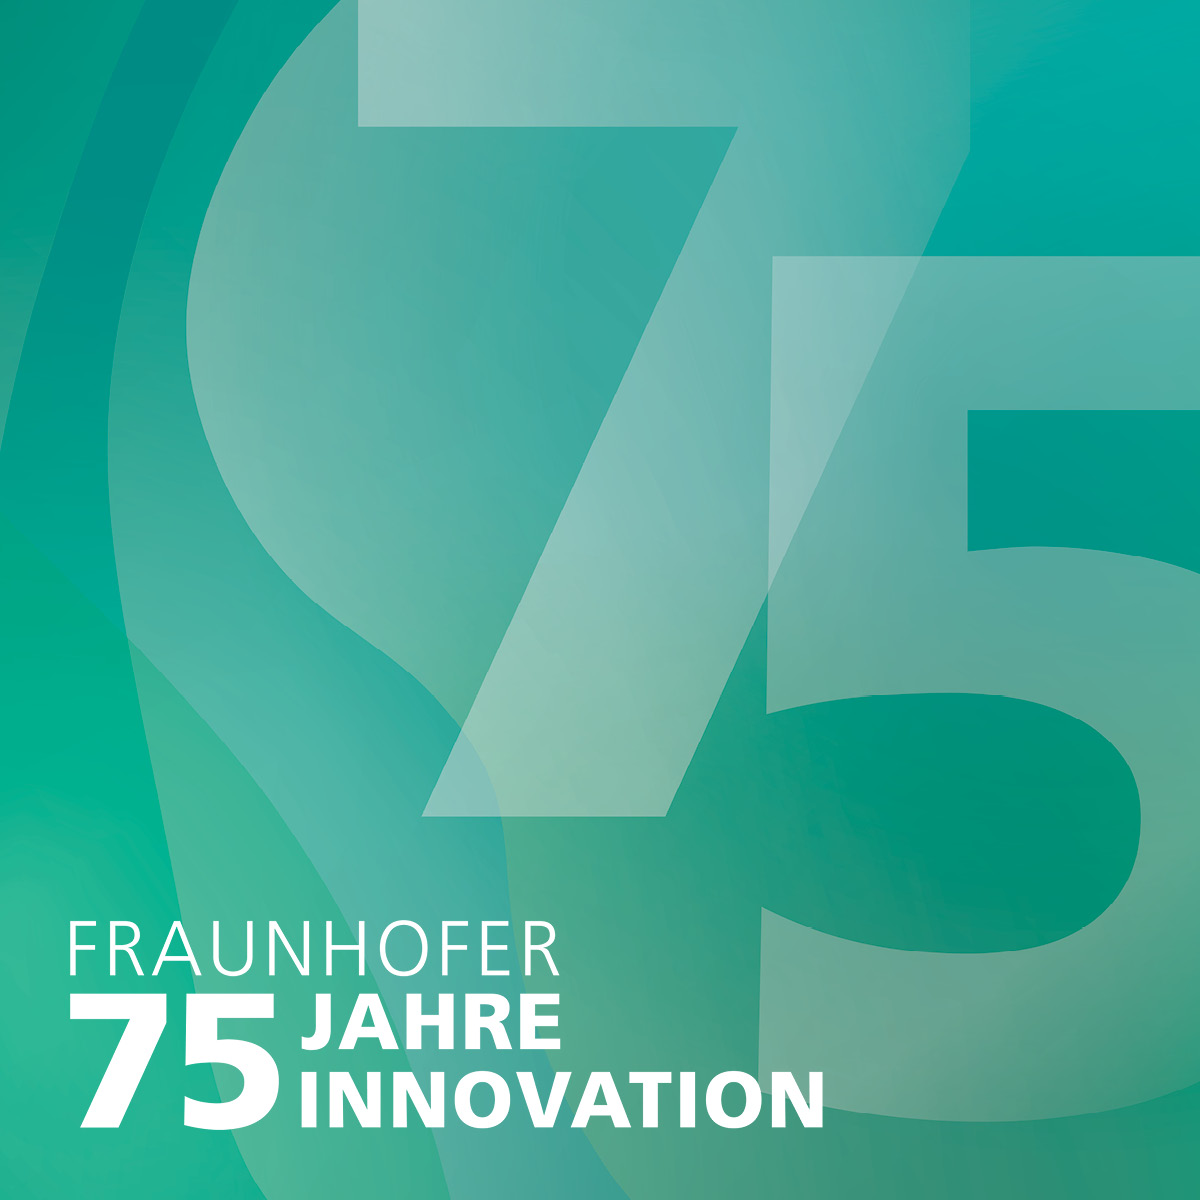 Happy Birthday, Fraunhofer-Gesellschaft! Wir feiern heute unseren 75. Geburtstag. Unter dem Hashtag #Fraunhofer75 gibt es ab sofort alles rund um unser Jubiläum – von historischen Anekdoten bis zu Forschungshighlights.